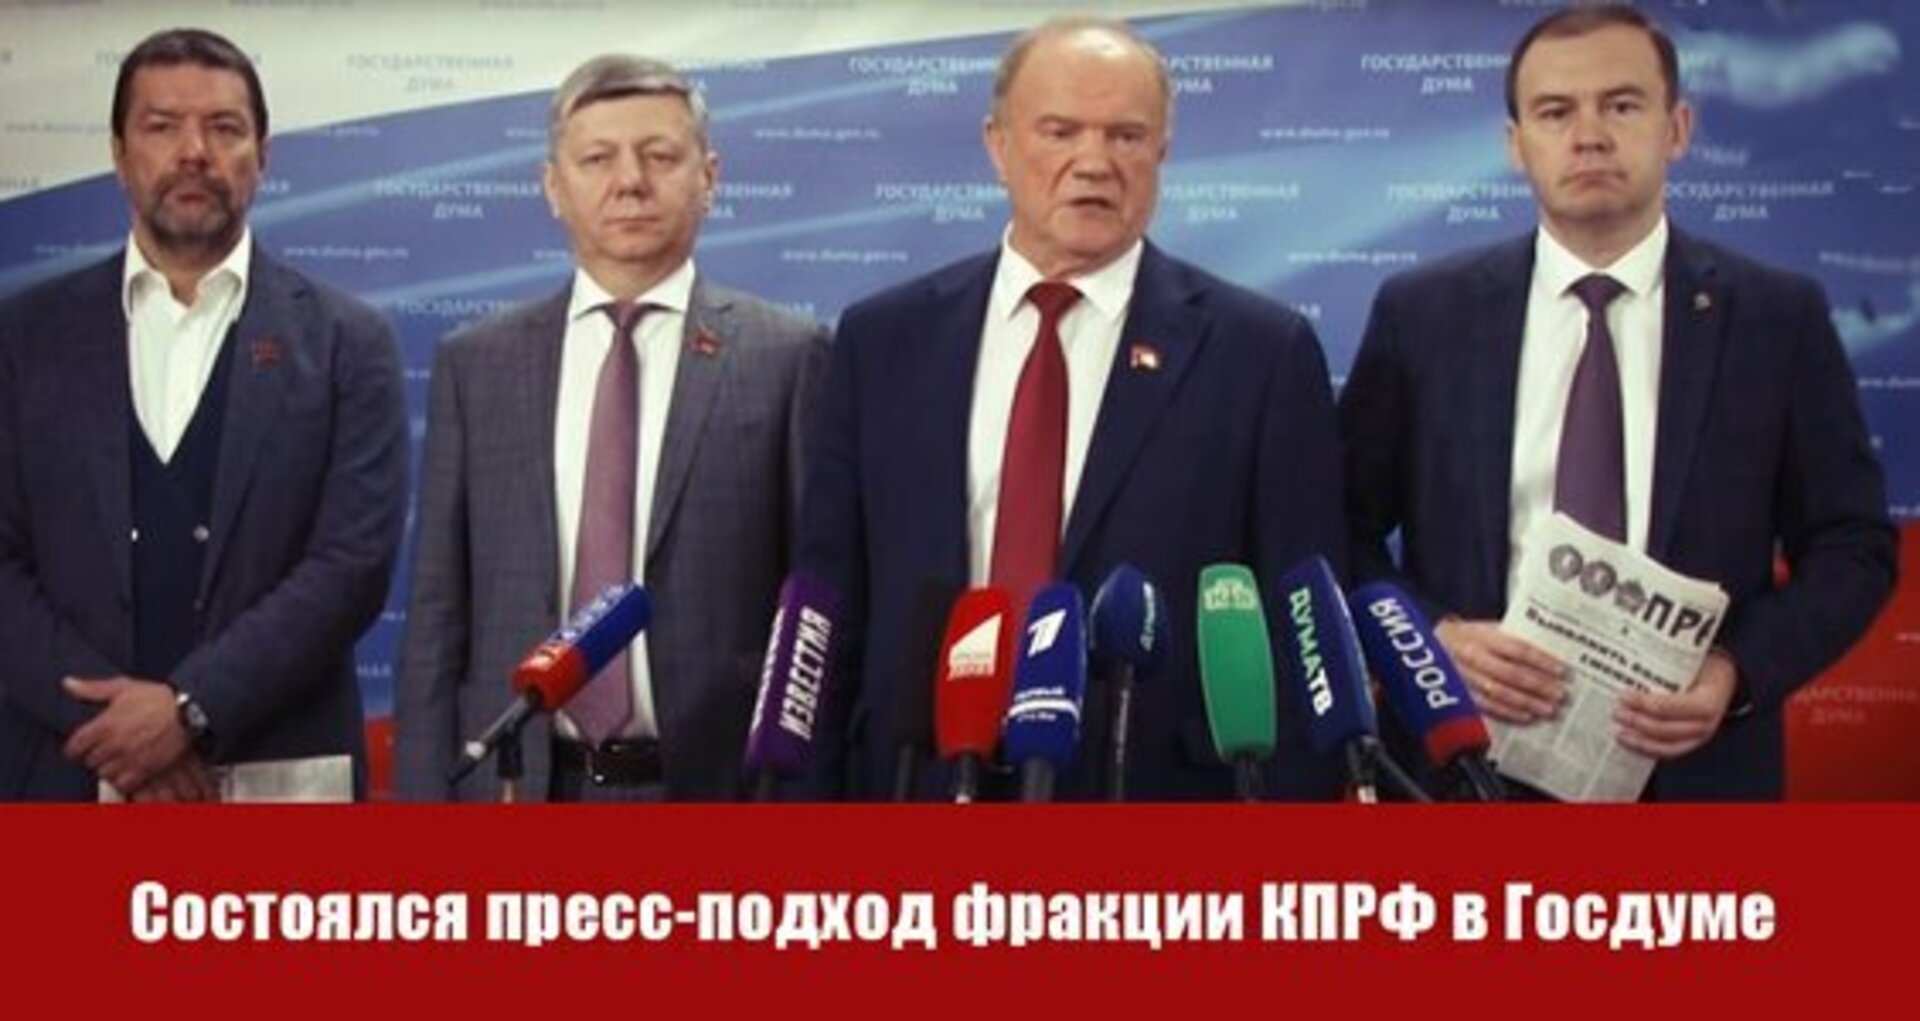 Состоялся пресс-подход фракции КПРФ в Госдуме